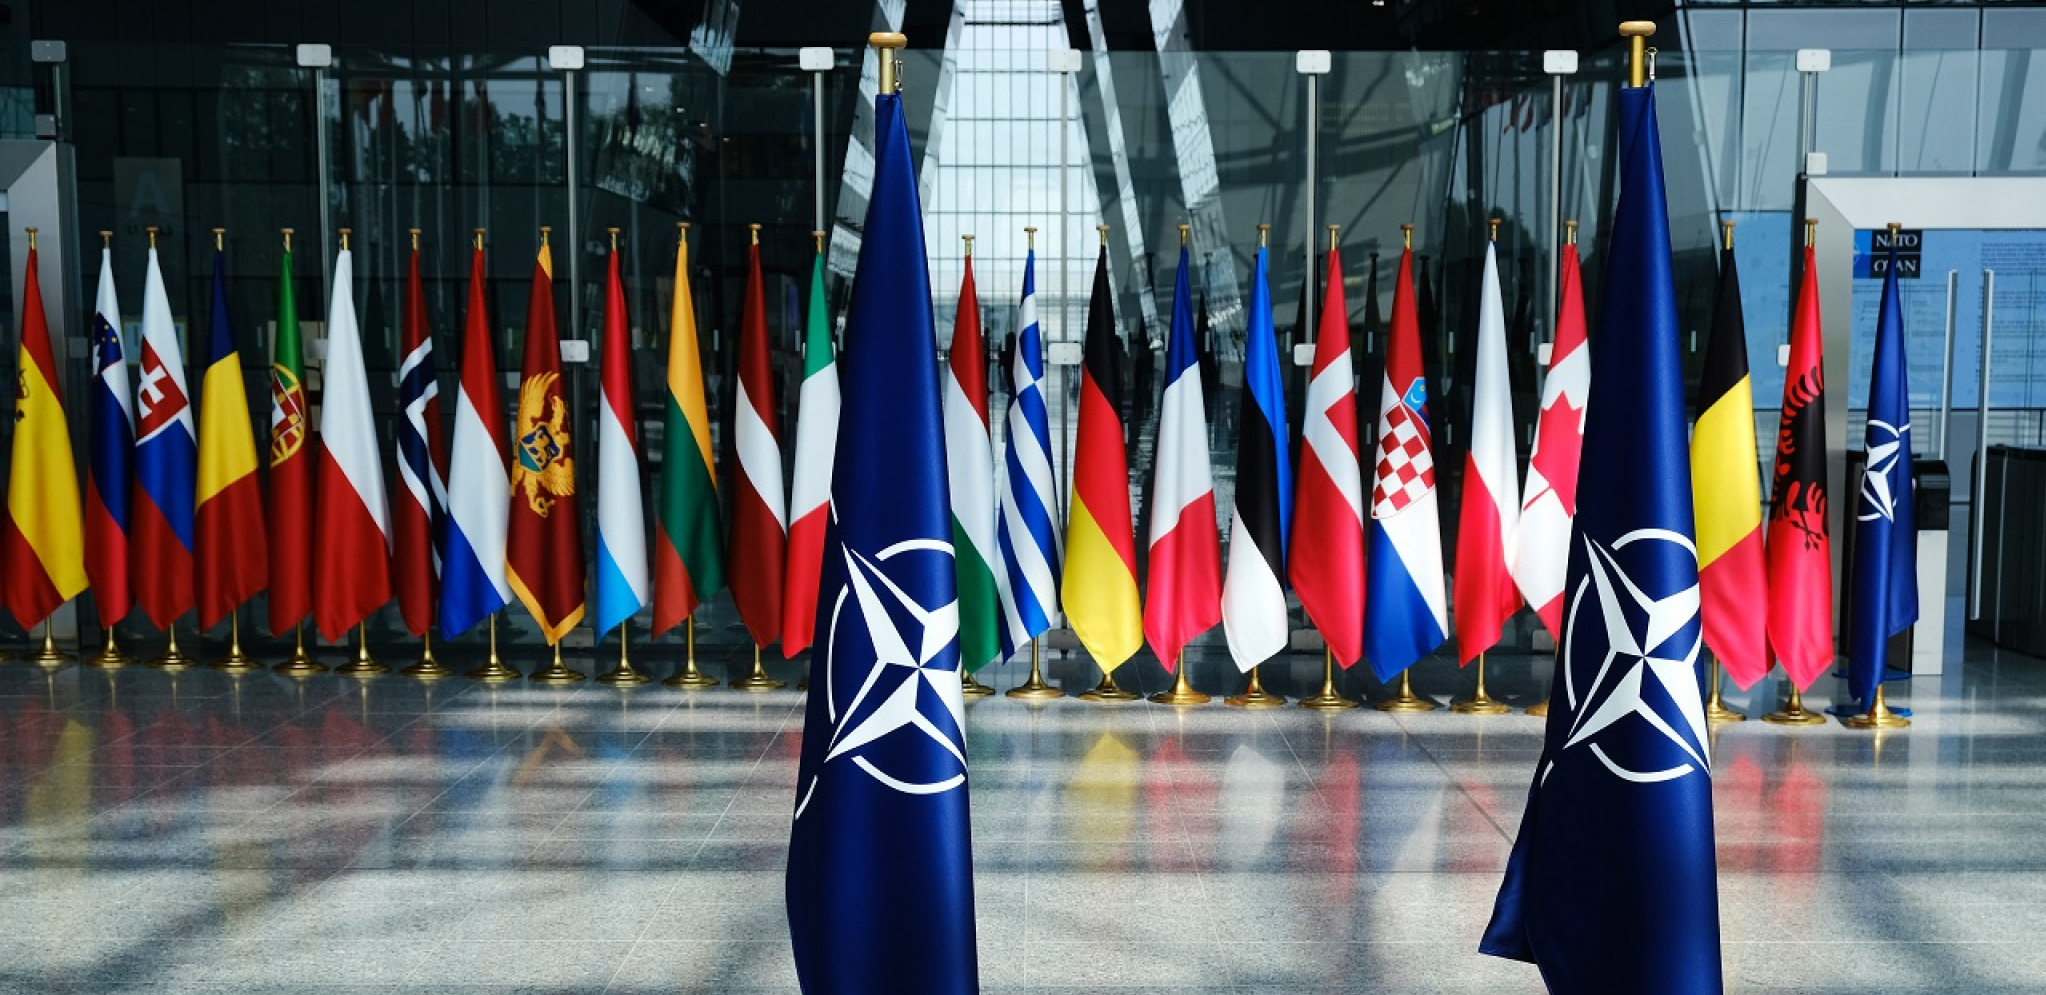 VOJNI KOMITET NATO-a Misija KFOR-a i situacija na KIM teme sastanaka 18. i 19. januara  u Briselu